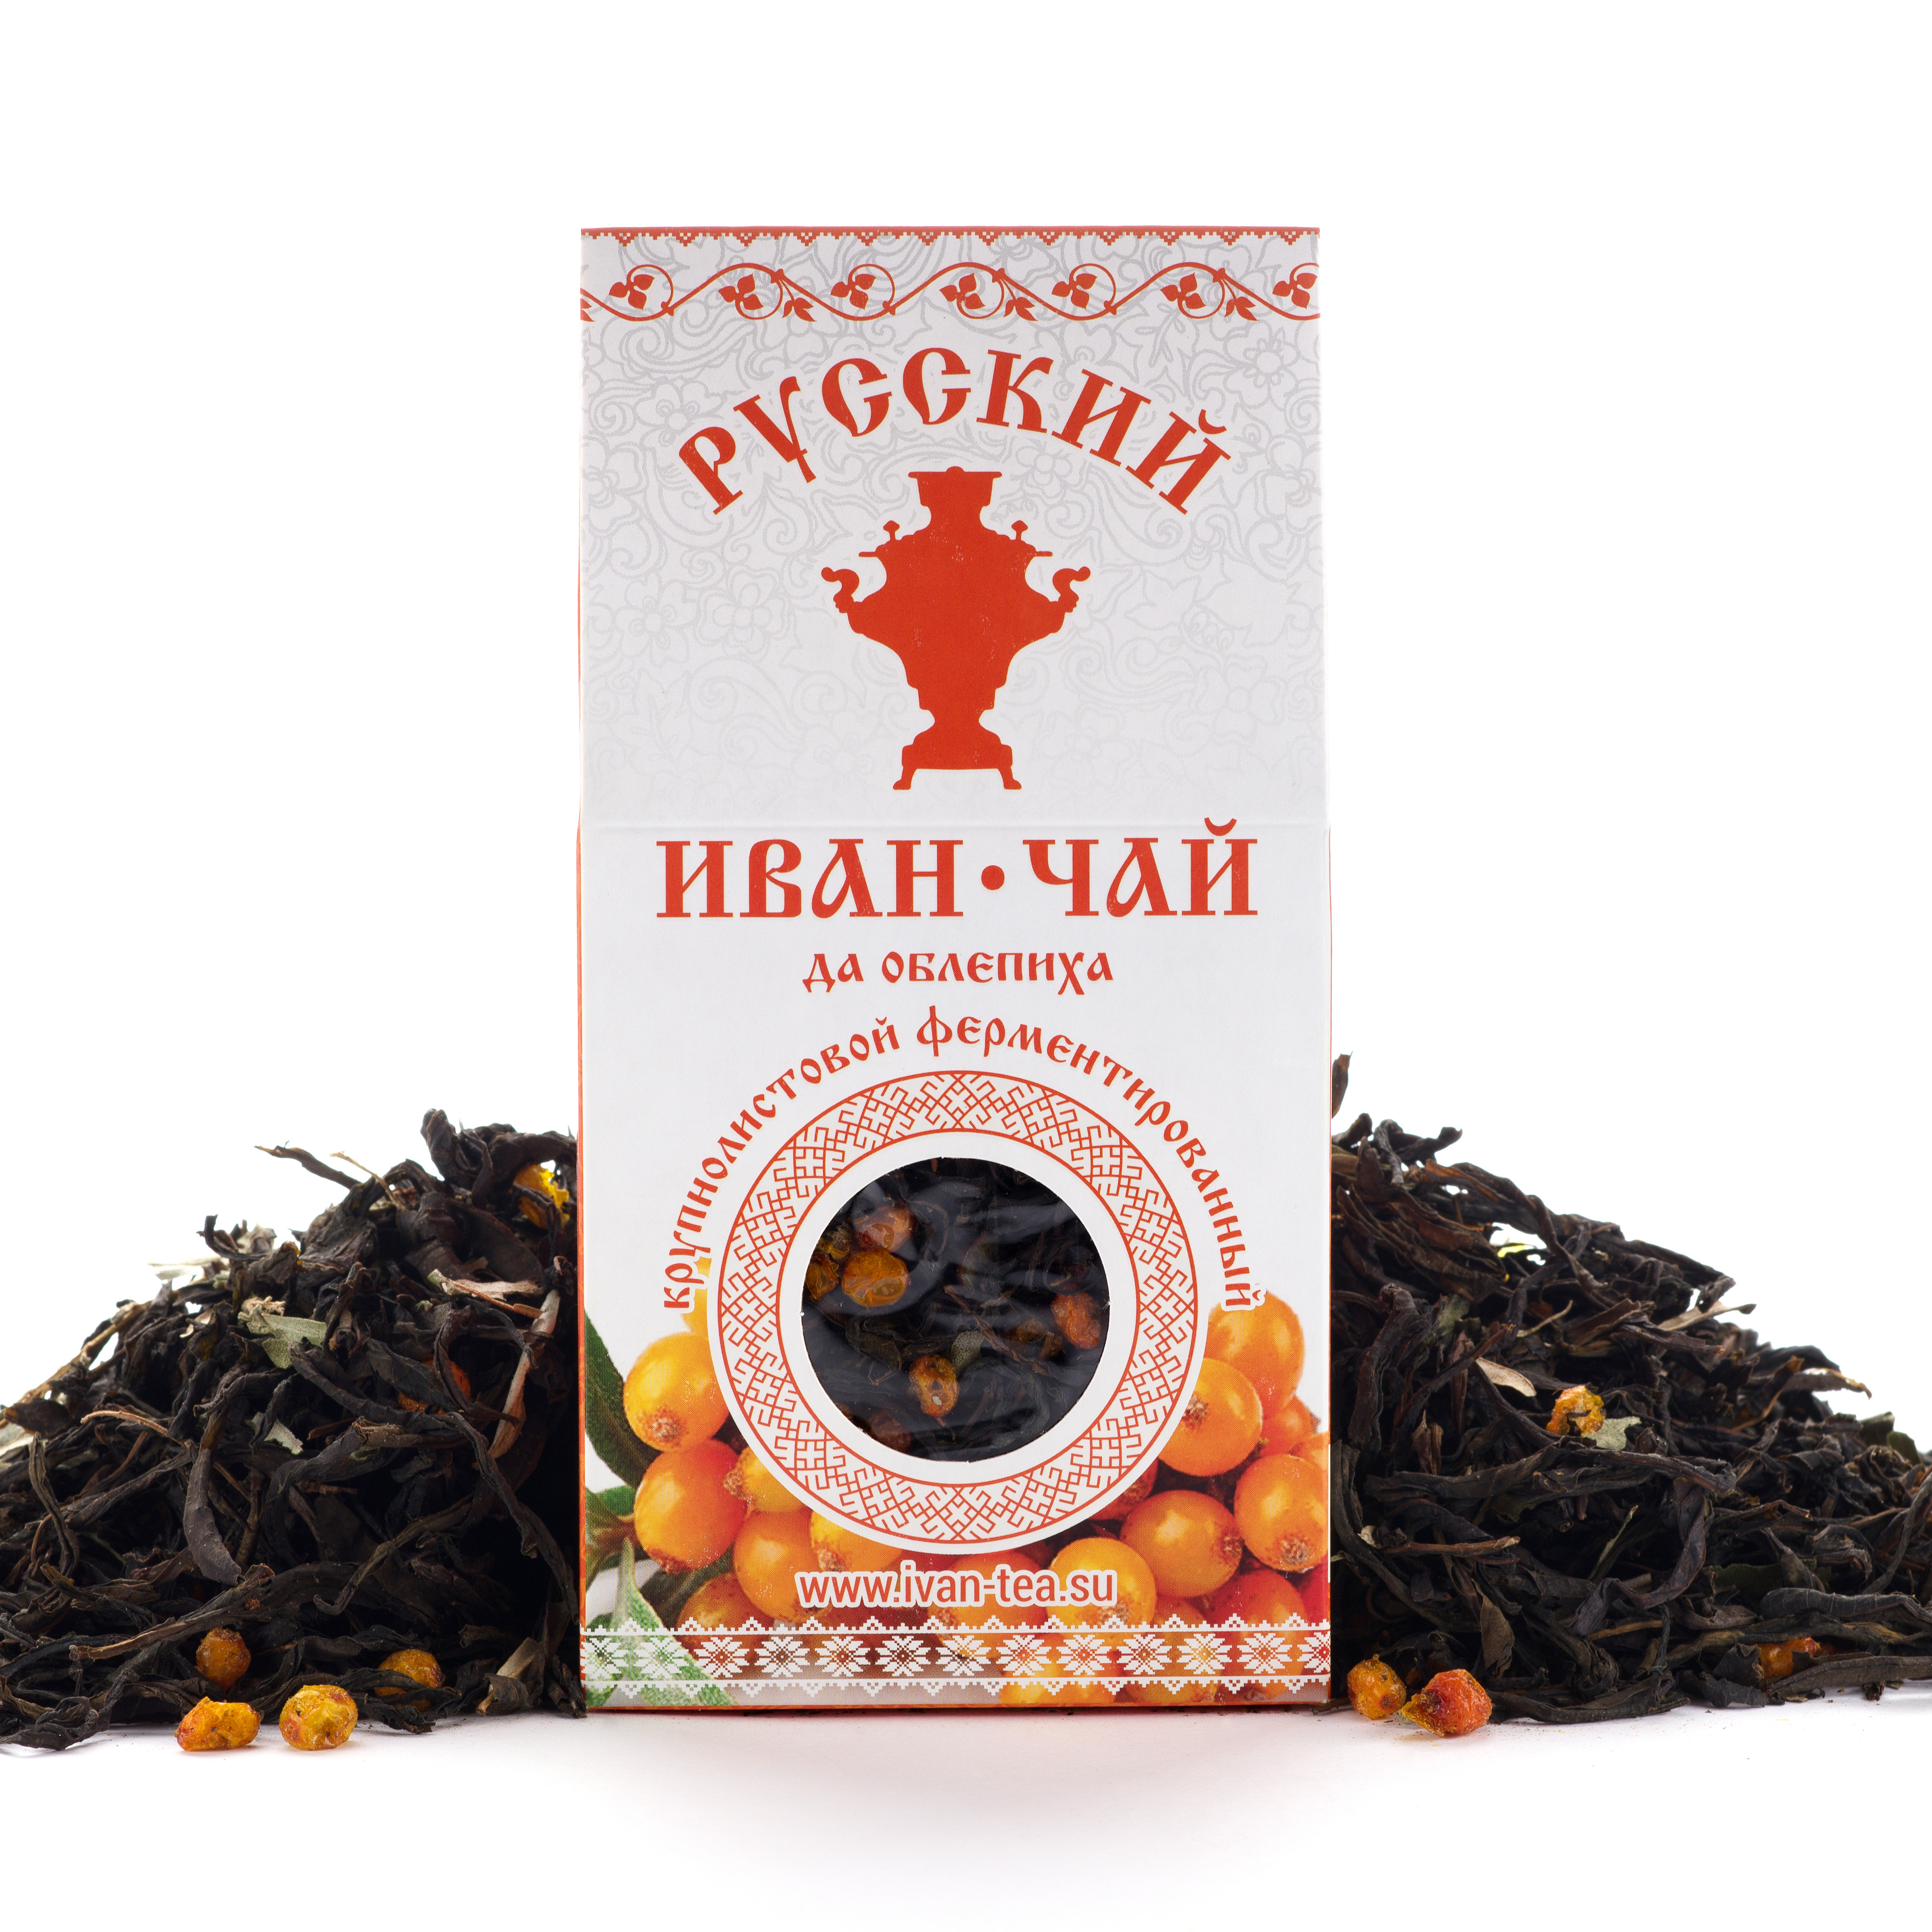 Купить чай россия